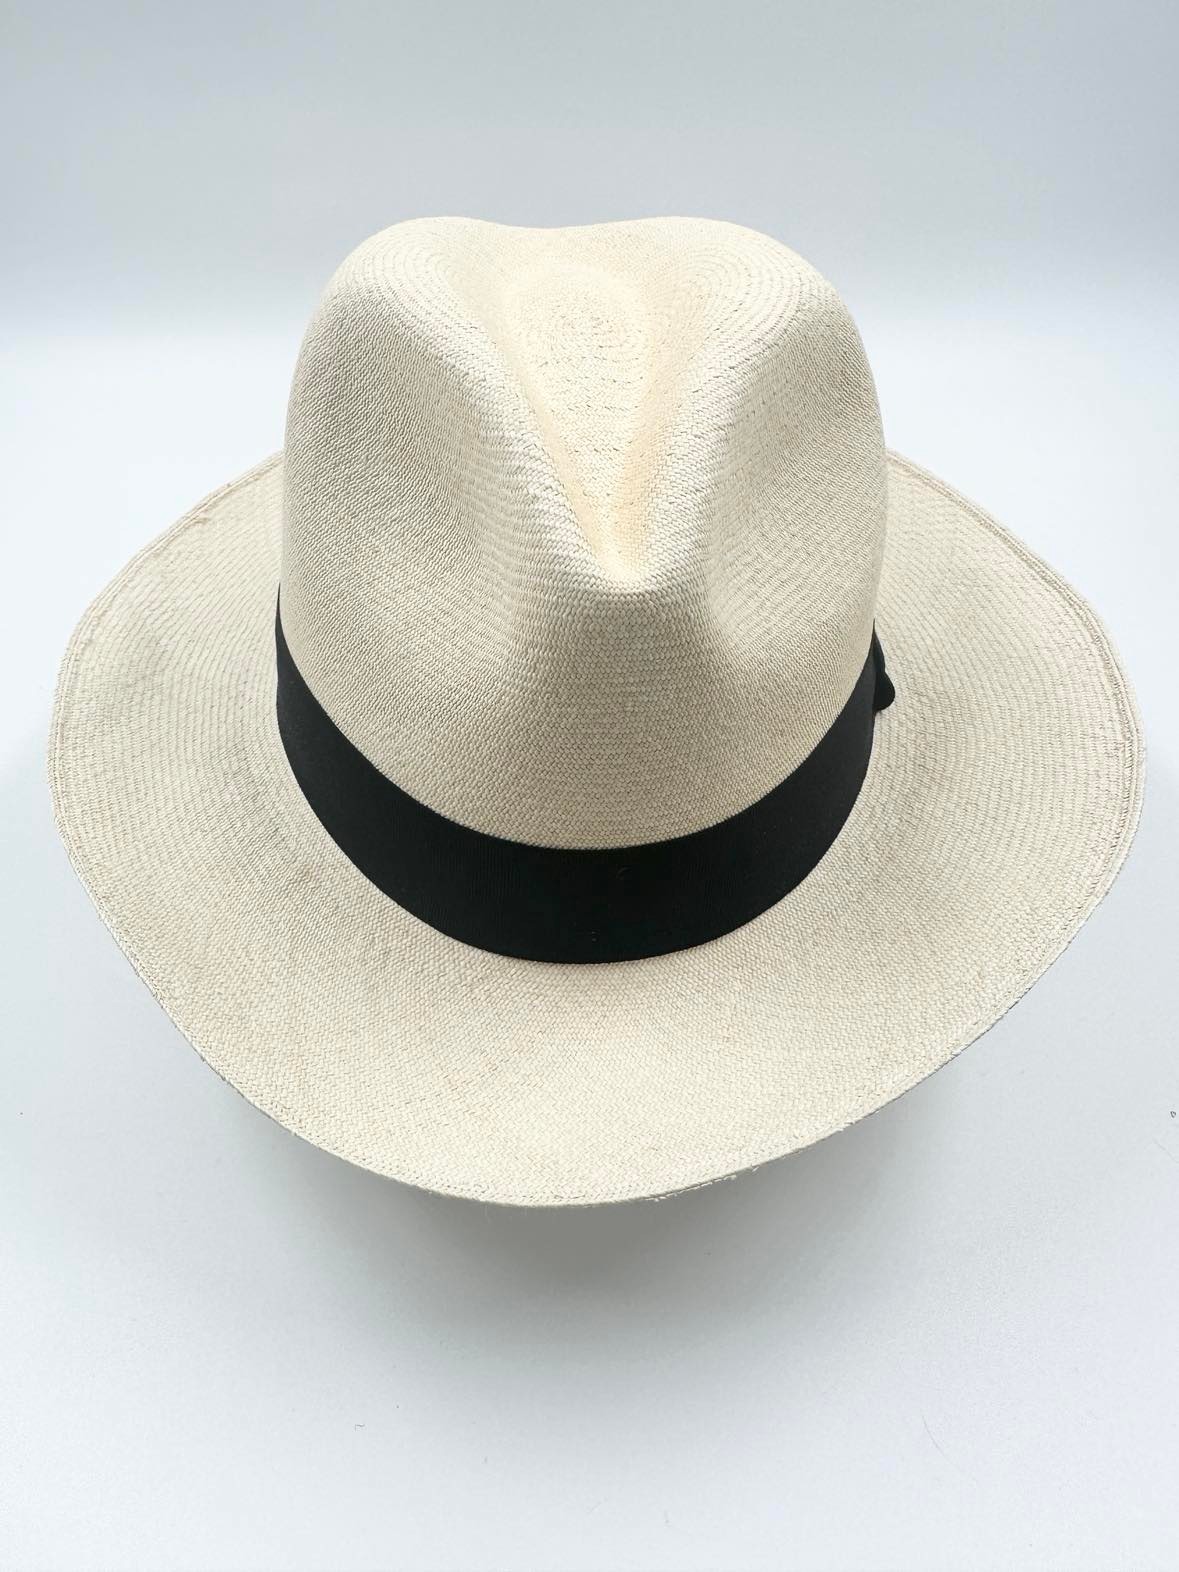 Ægte Montecristi Fedora Panama Hat med en kvalitet på 19-20 fletninger pr. inch - unik og håndflettet fedora